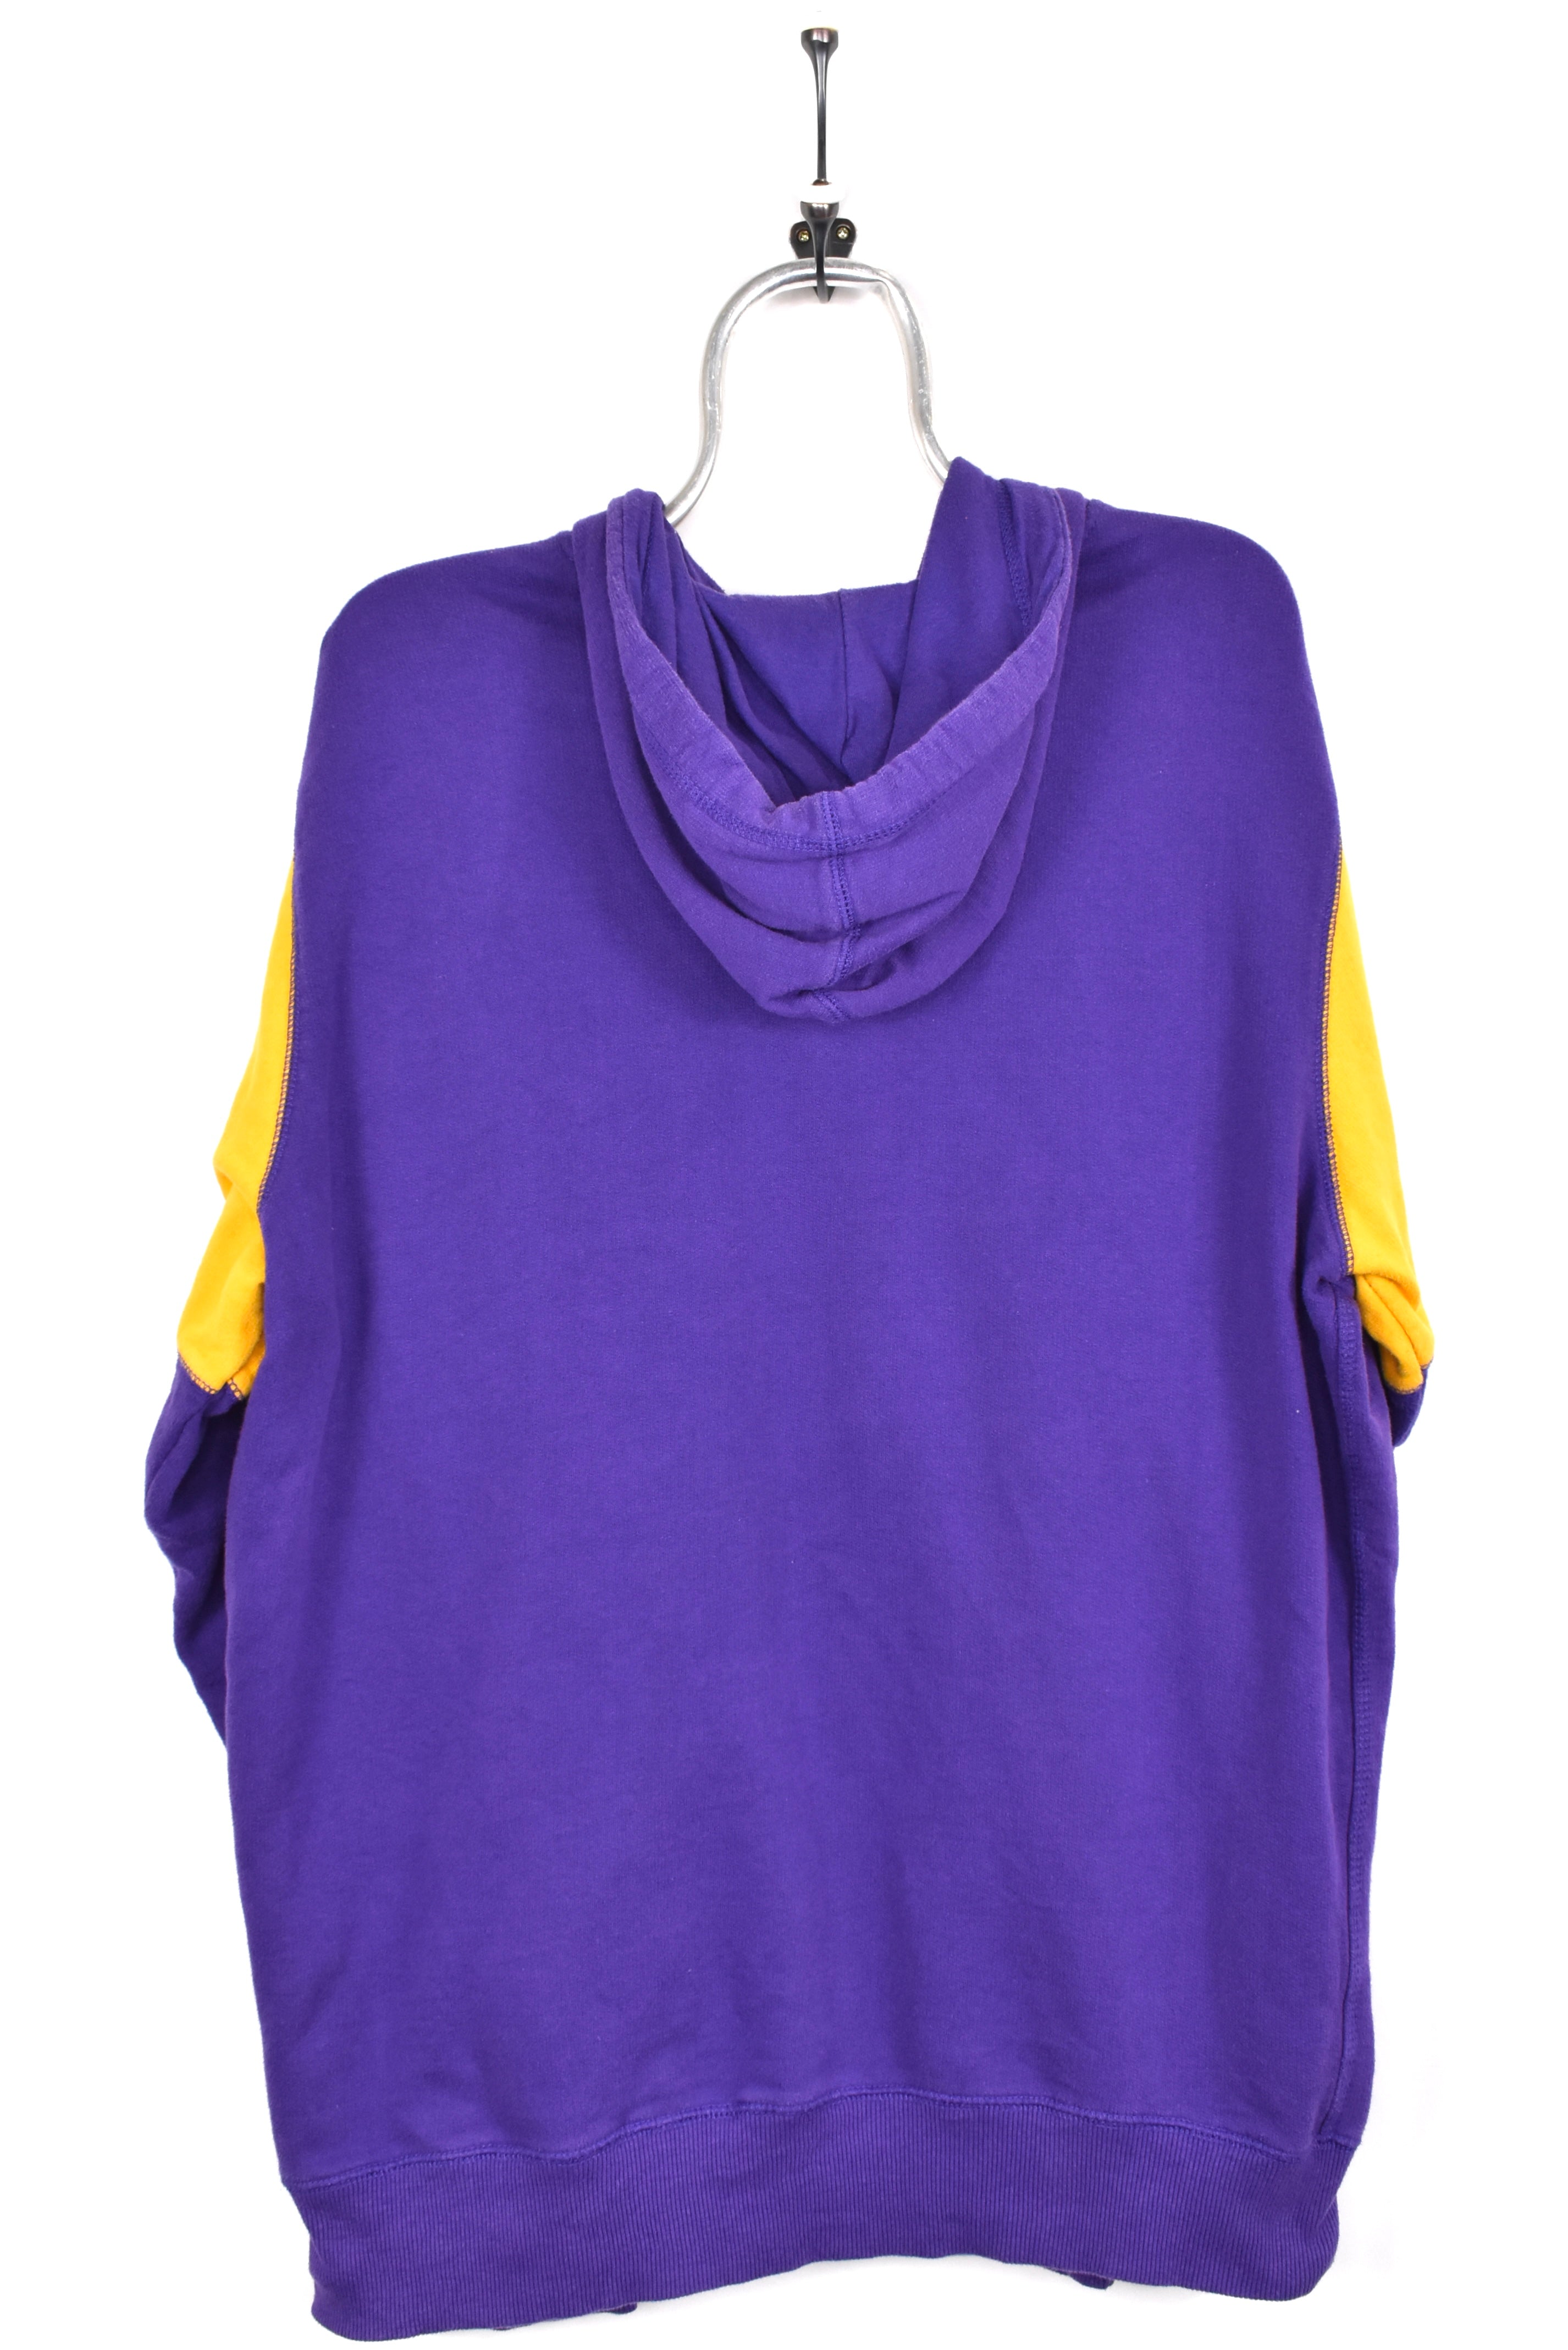 Vintage Minnesota Vikings hoodie, NFL purple sweatshirt - AU XL PRO SPORT